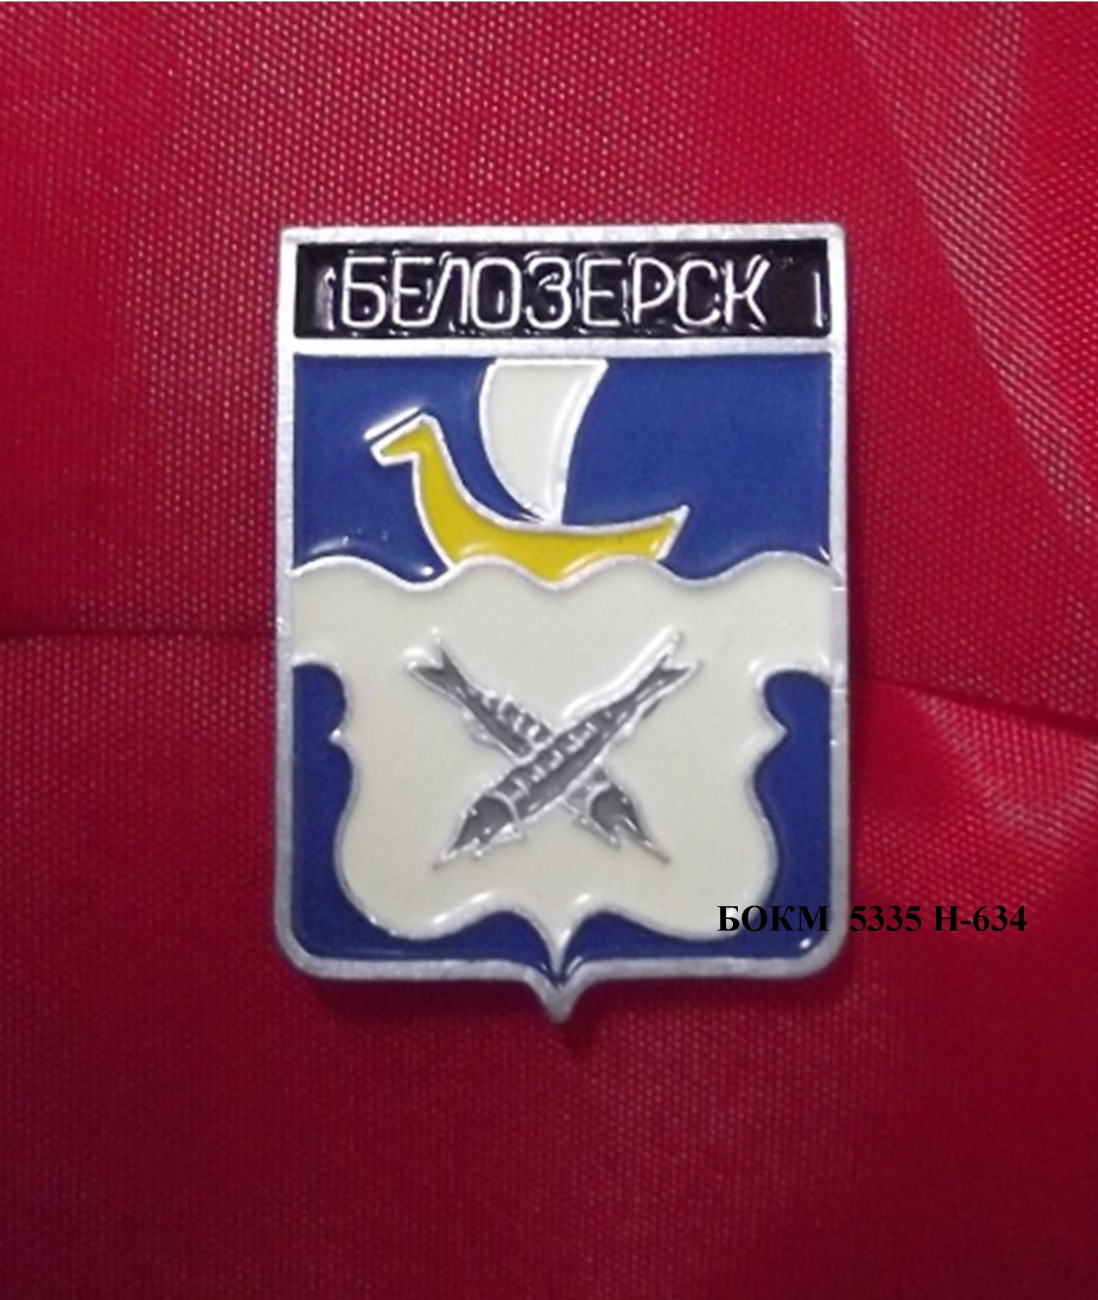 Значок нагрудный «Белозерск» 1999 г. Металл, краска, штамповка. 3,3 х 2,5 х 0,5 см. Вологда, Вологодский оптико-механический завод. БОКМ-5335 Н-634.